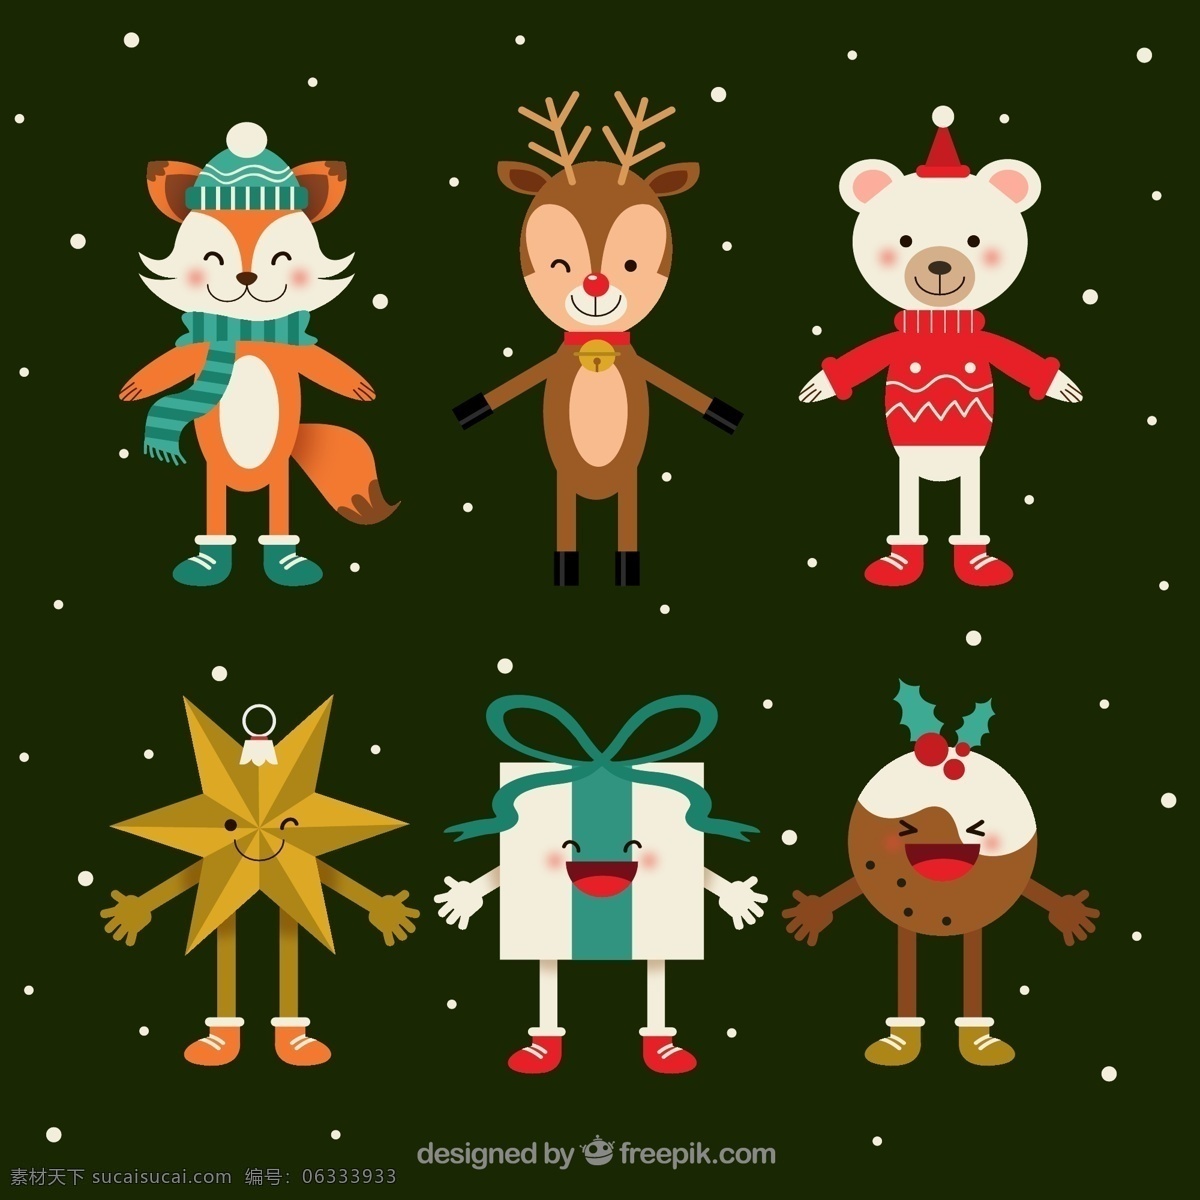 款 创意 笑脸 圣诞 角色 狐狸 驯鹿 北极熊 星星 礼物 礼盒 挂饰 圣诞吊球 文化艺术 节日庆祝